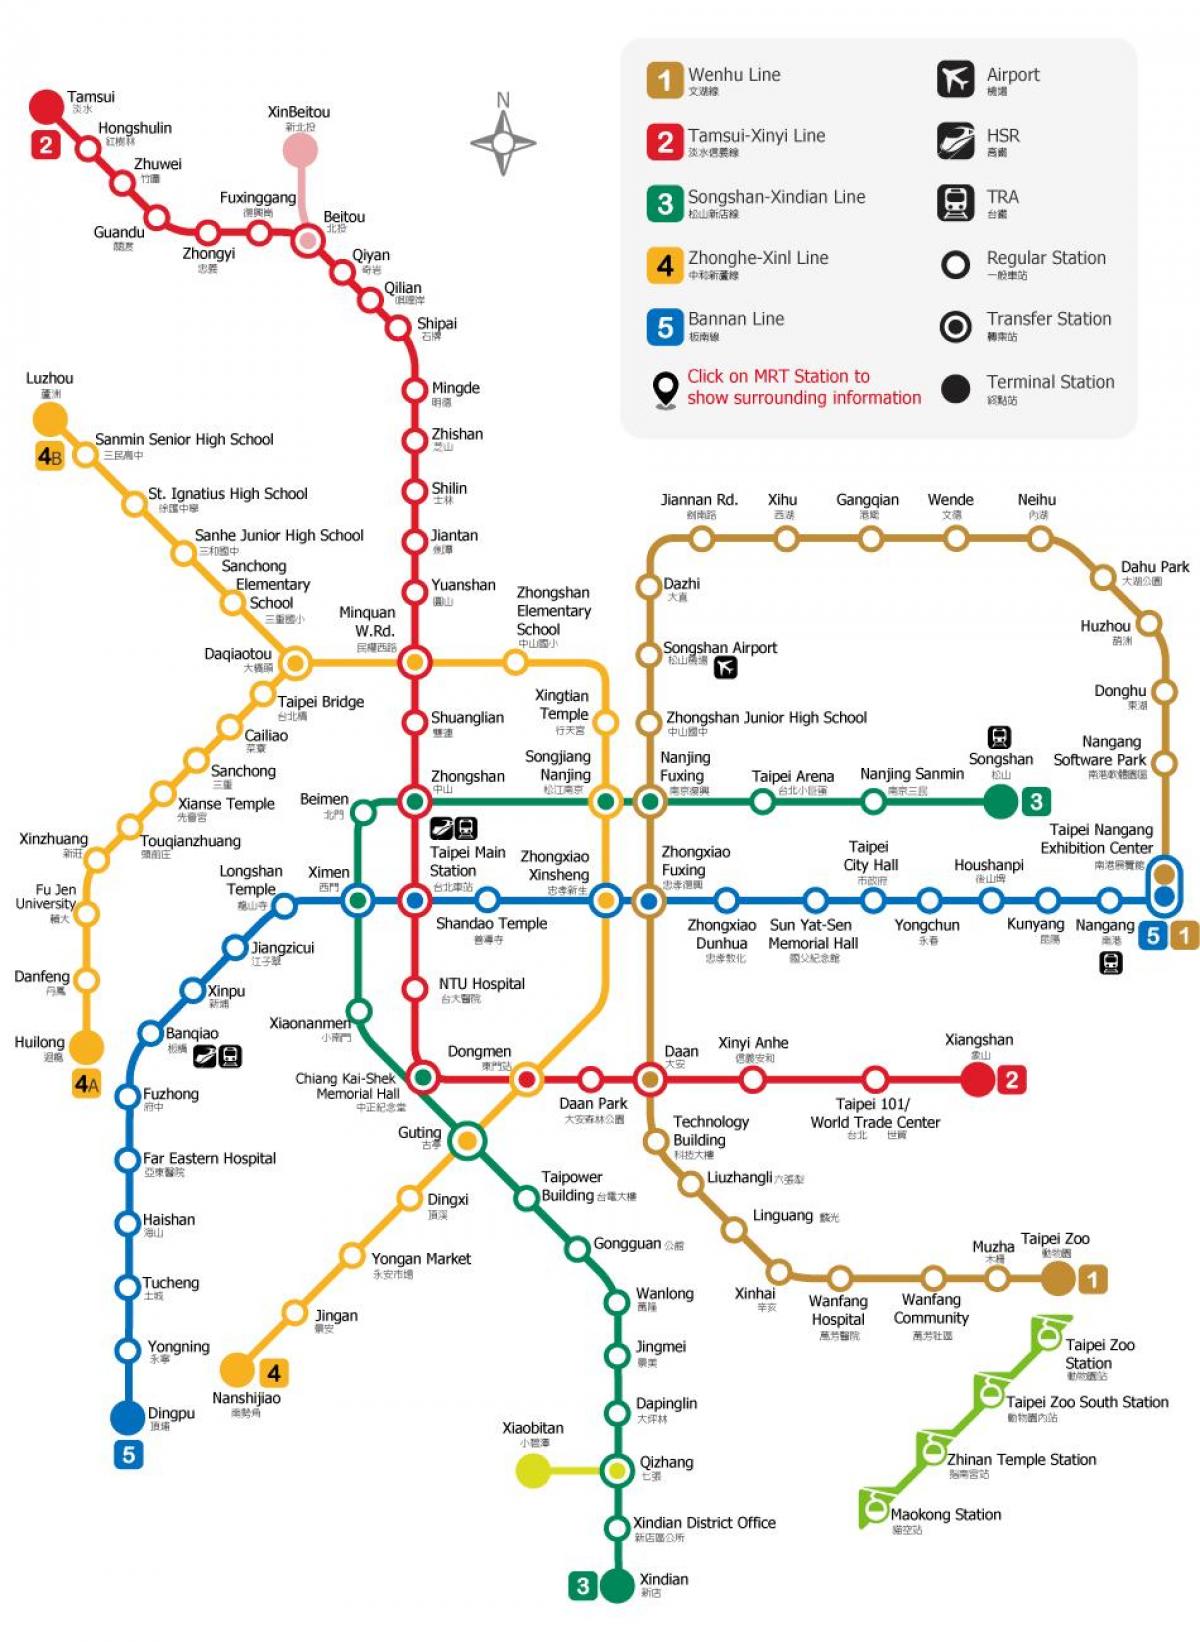 ТПЭ MRT mapę